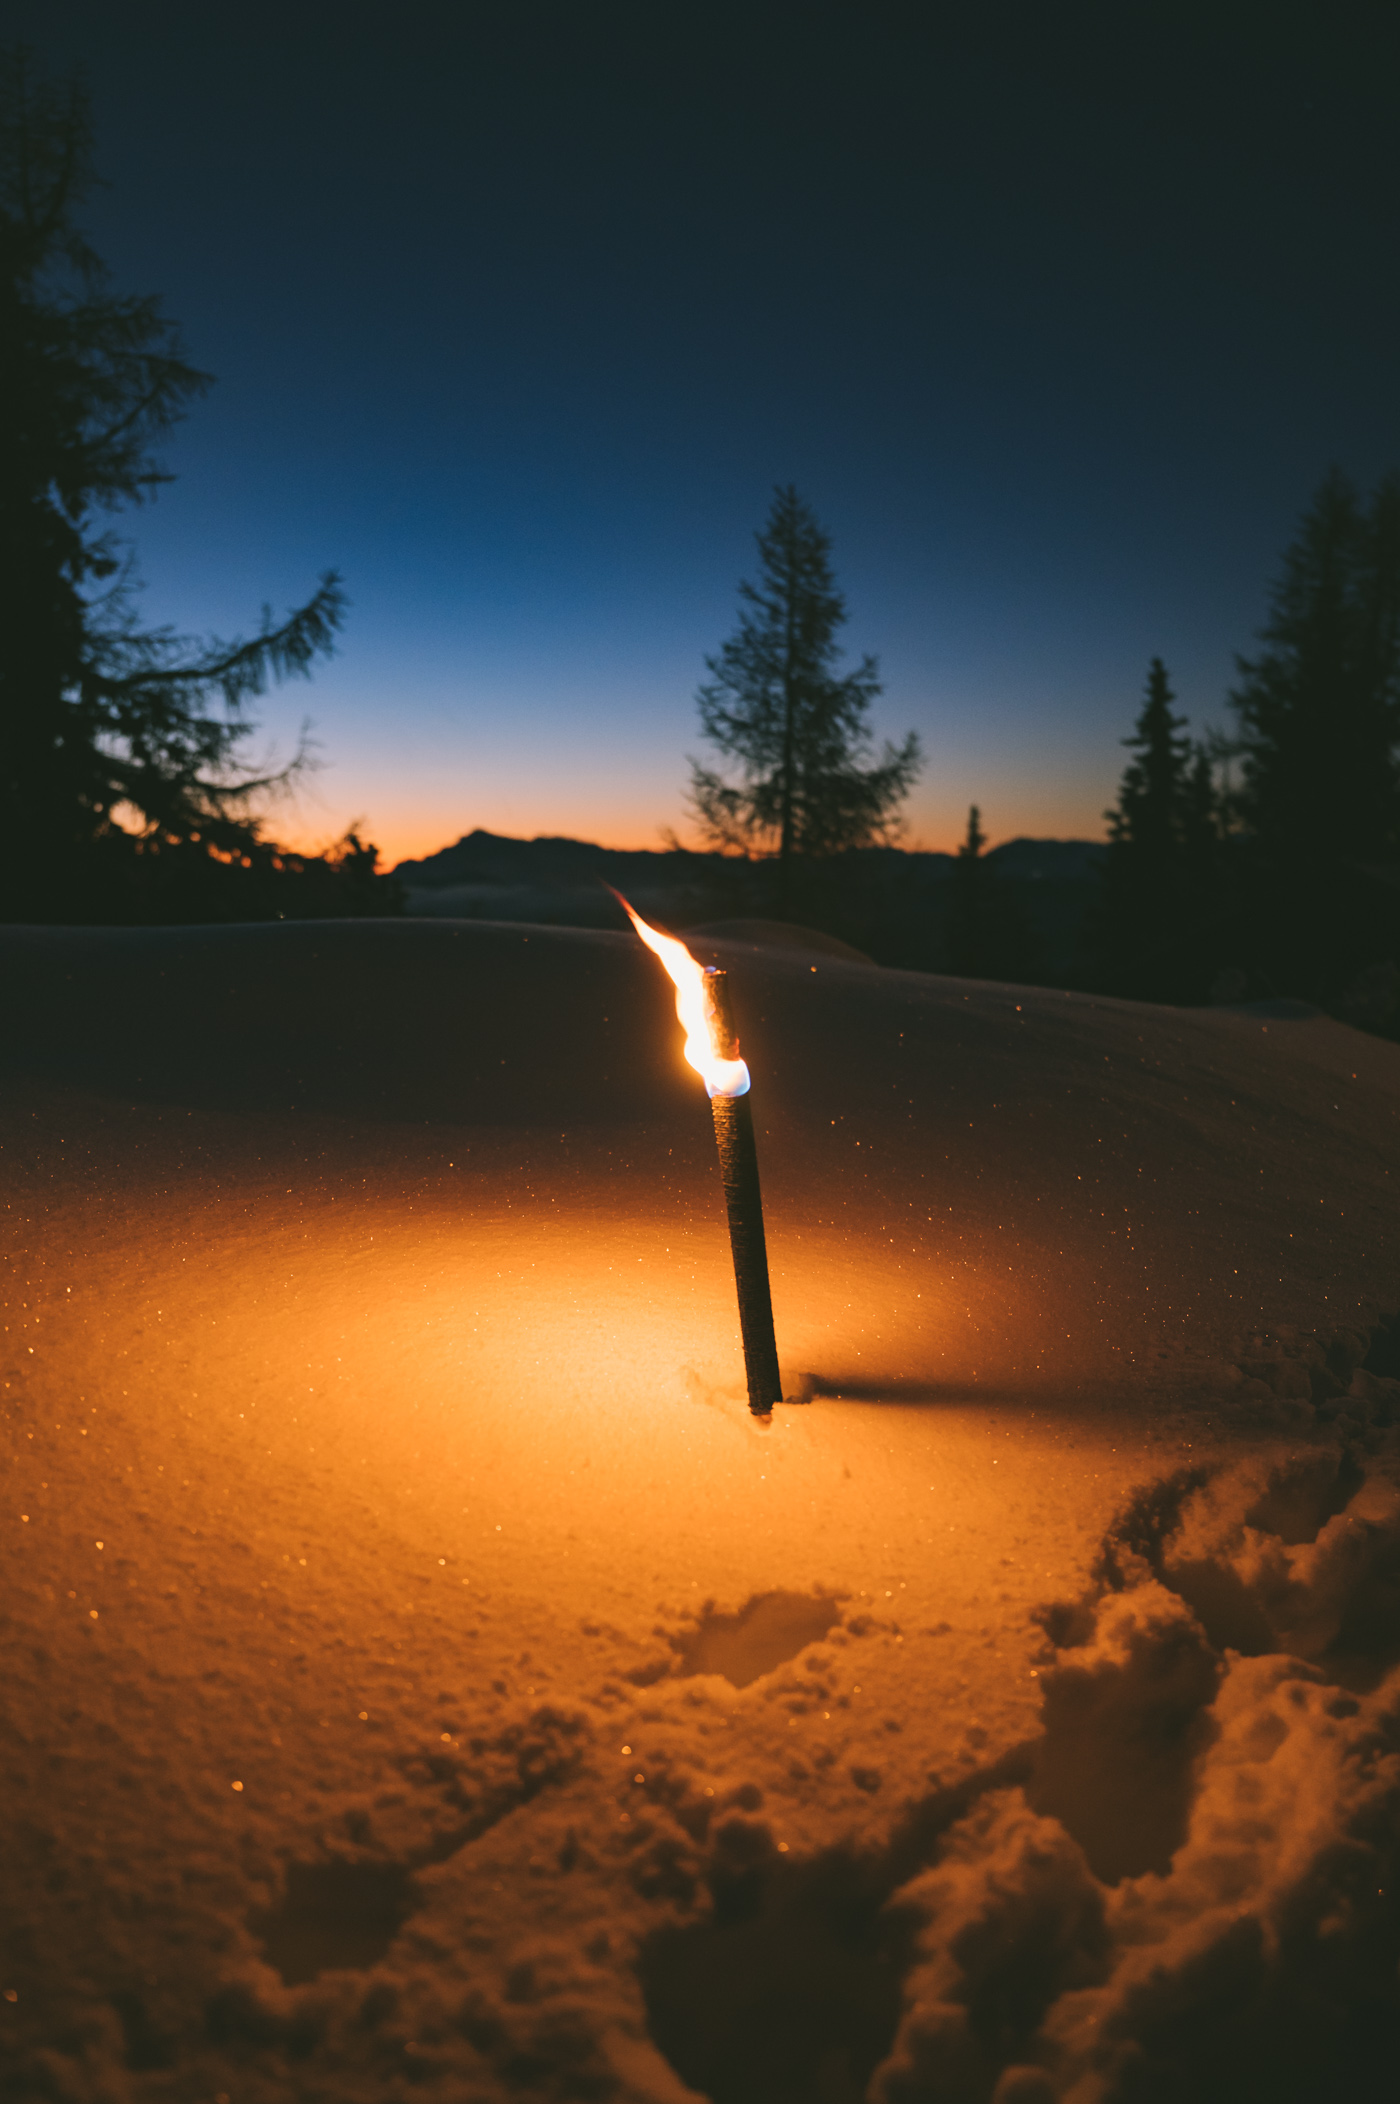 Torchlight winter hike at Hochwurzen in Schladming